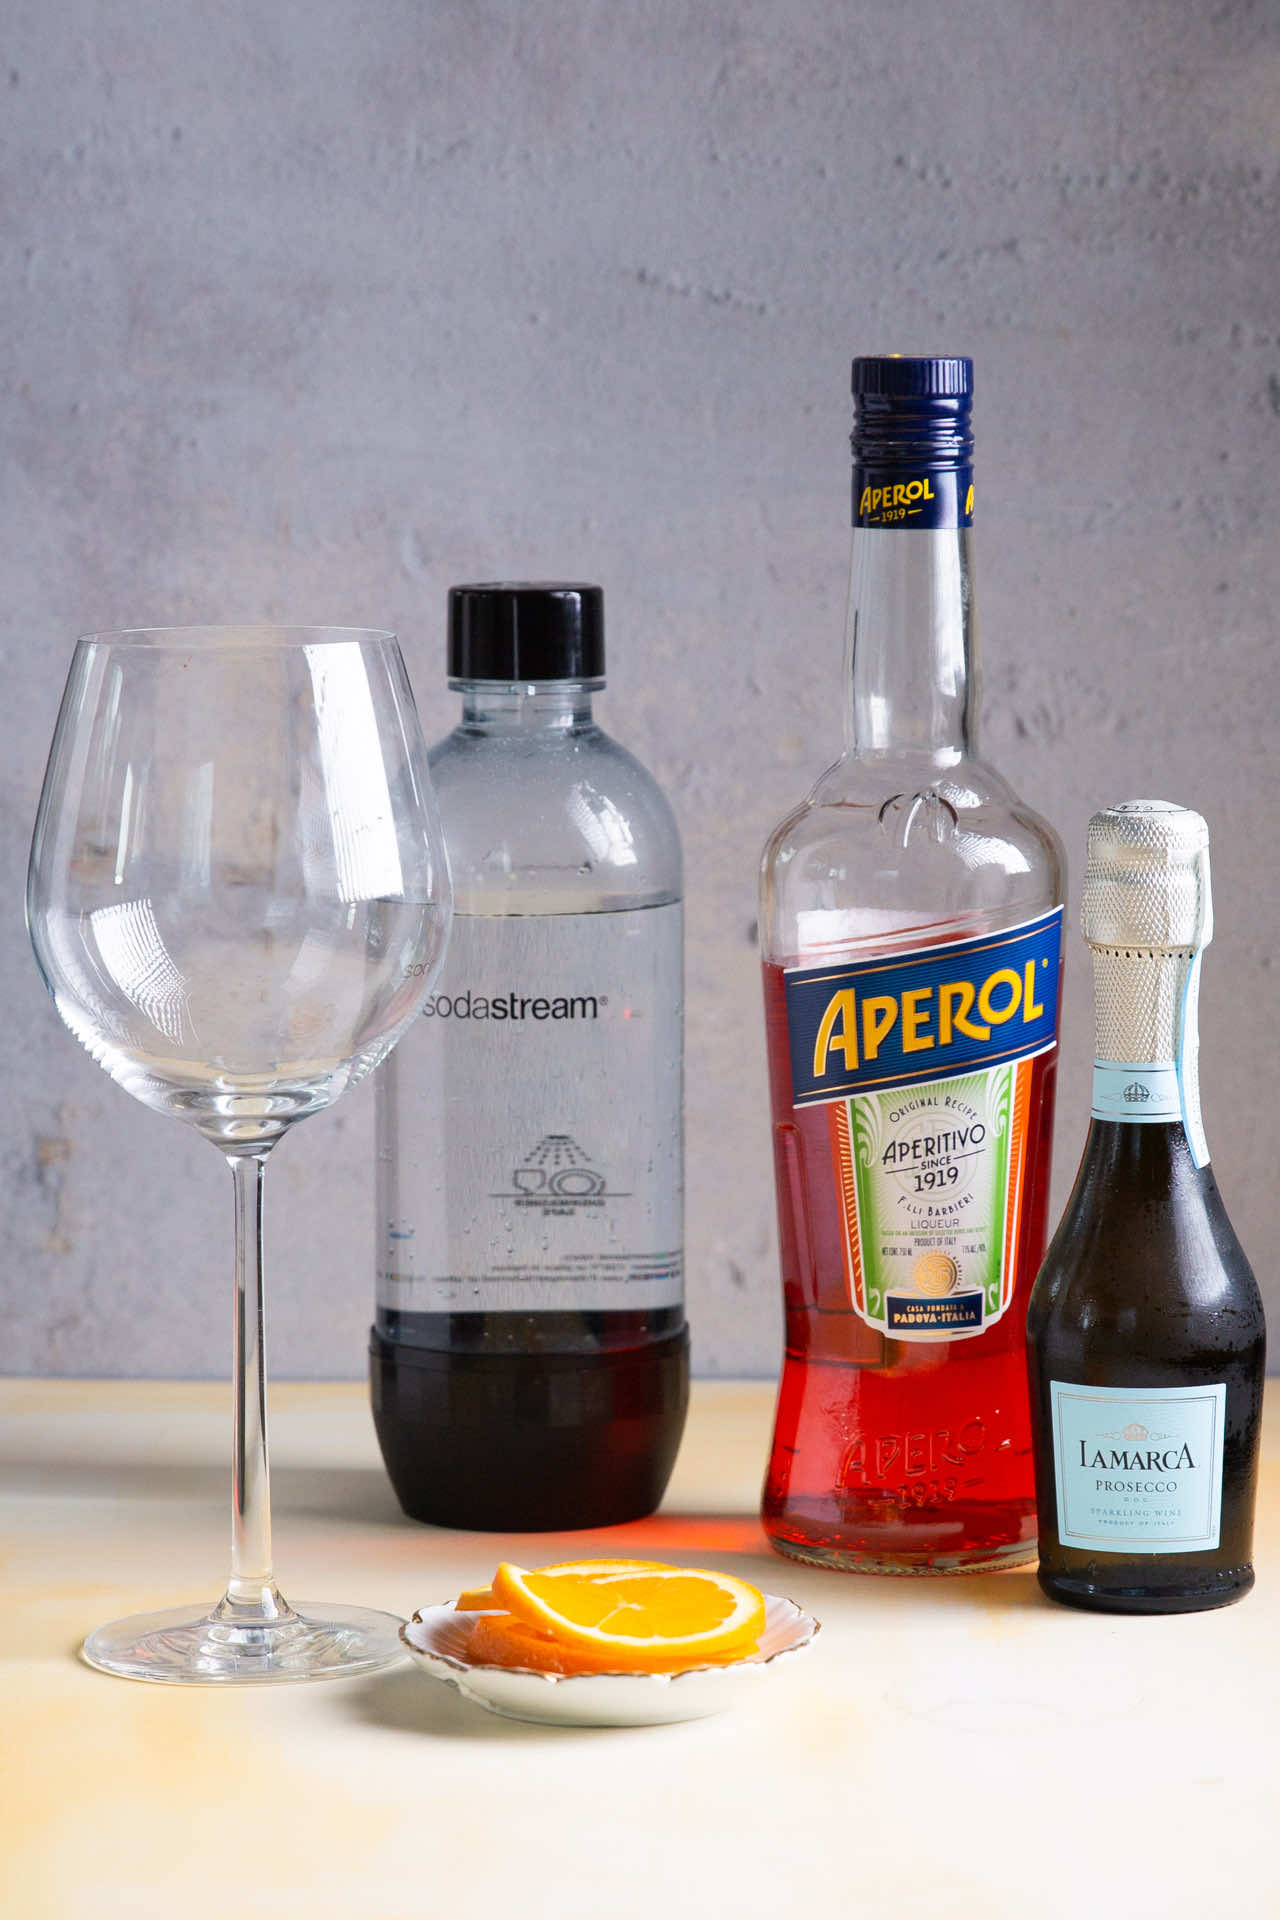 empty wine glass, soda bottle, aperol bottles and proseco bottle